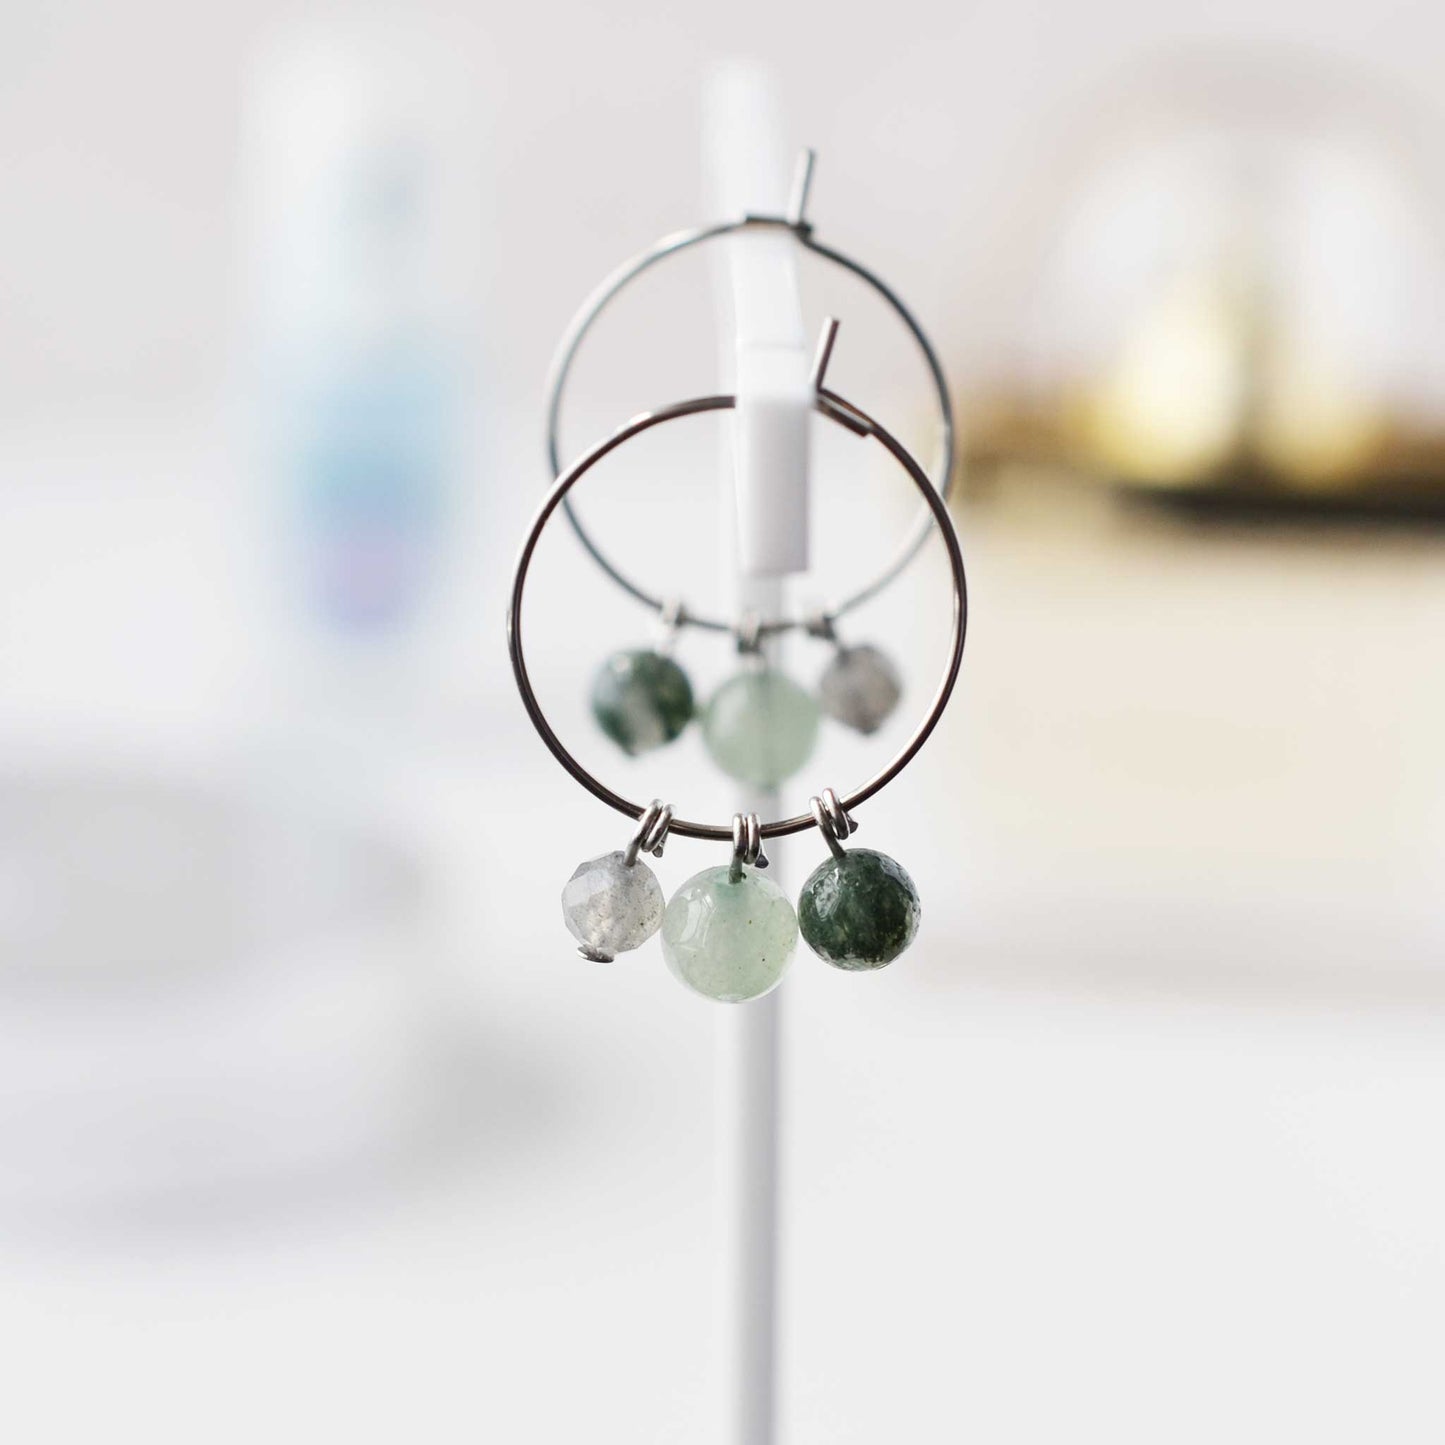 Green gemstone hoop earrings hanging on soft focus background